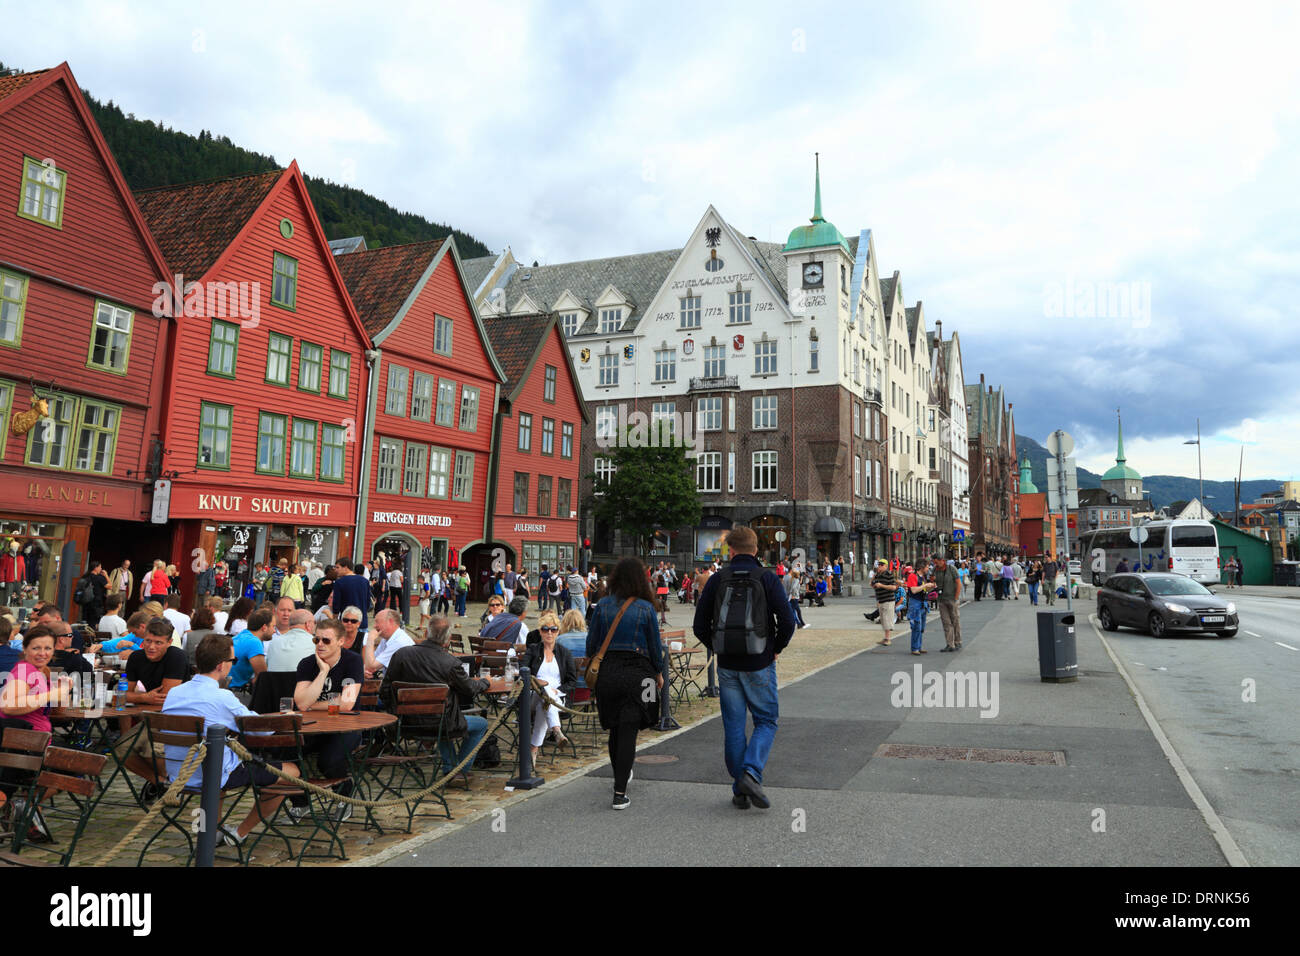 The UNESCO World Heritage Site, Bryggen, in Bergen, Norway Stock Photo